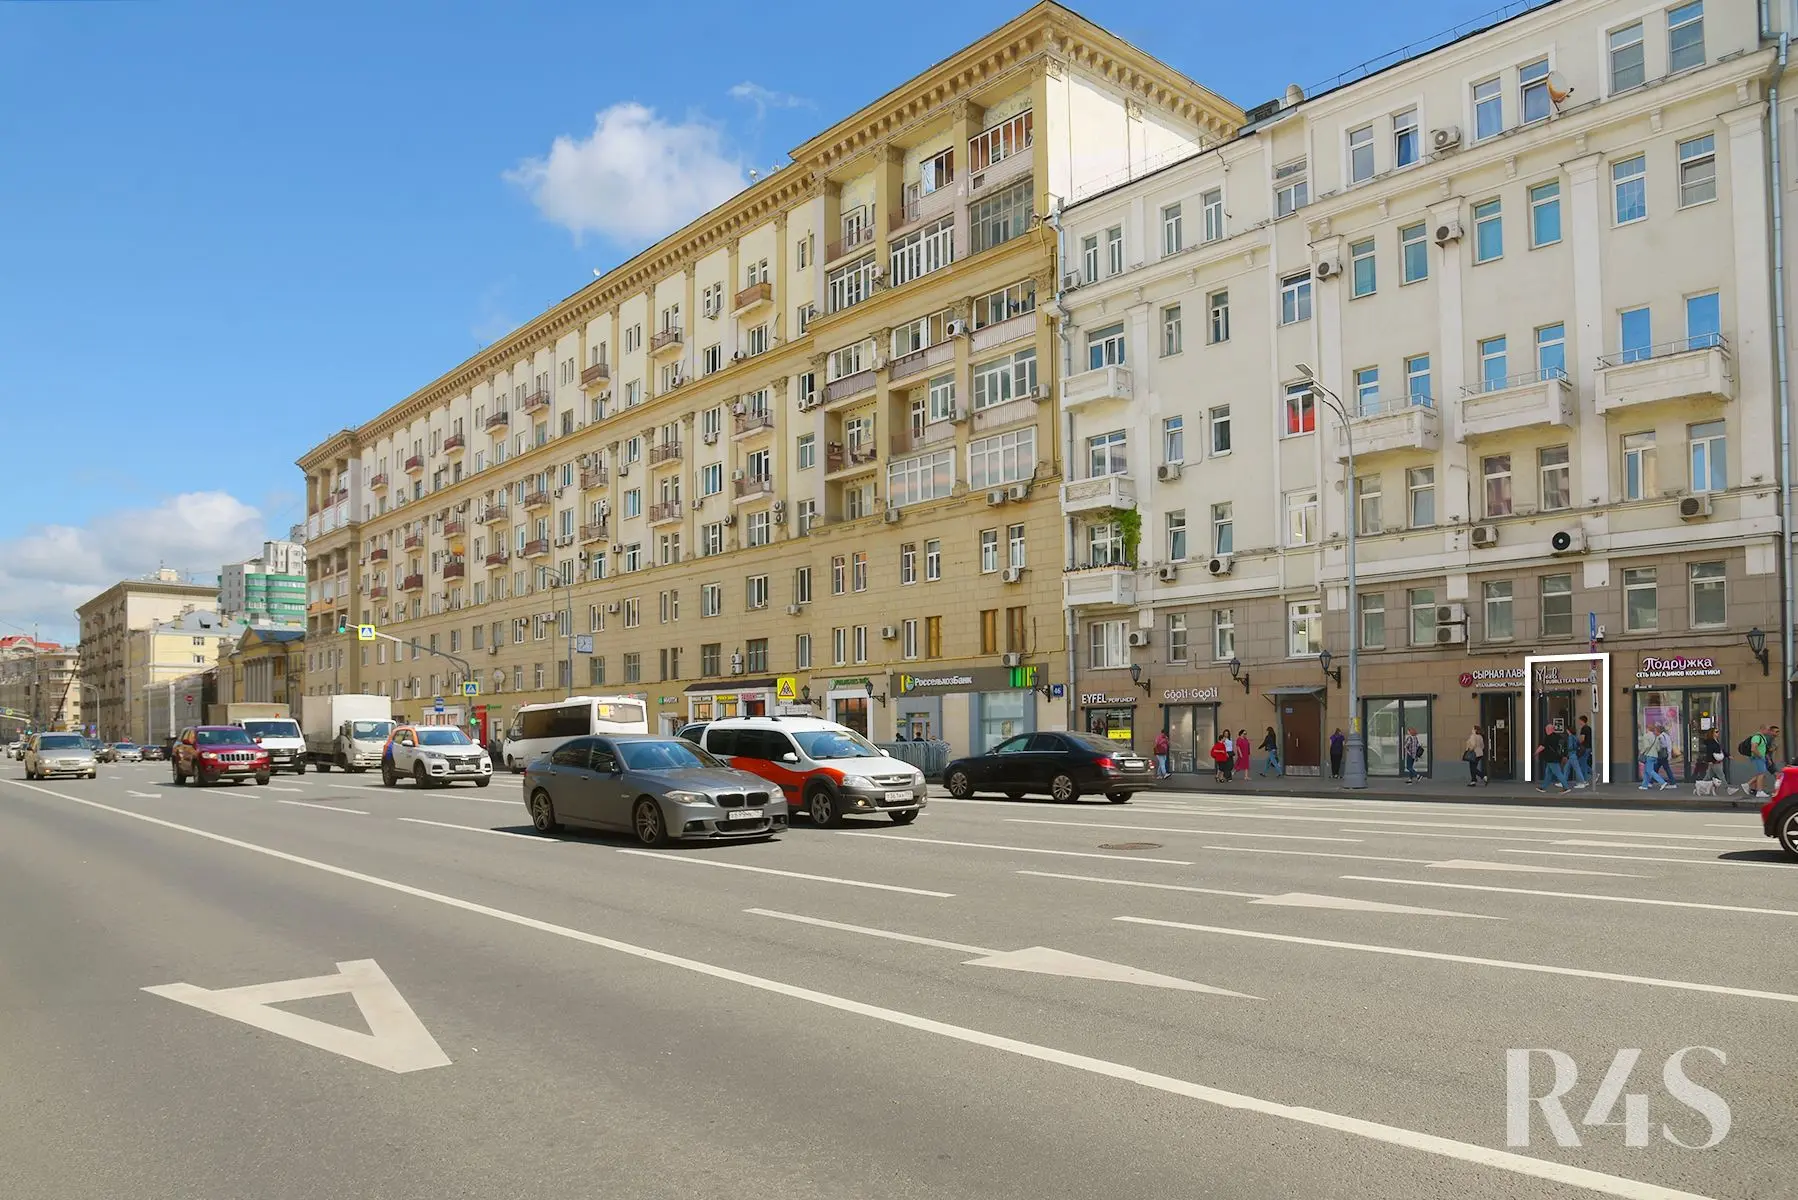 Продажа готового арендного бизнеса площадью 14.2 м2 в Москве: проспект Мира, 44 R4S | Realty4Sale